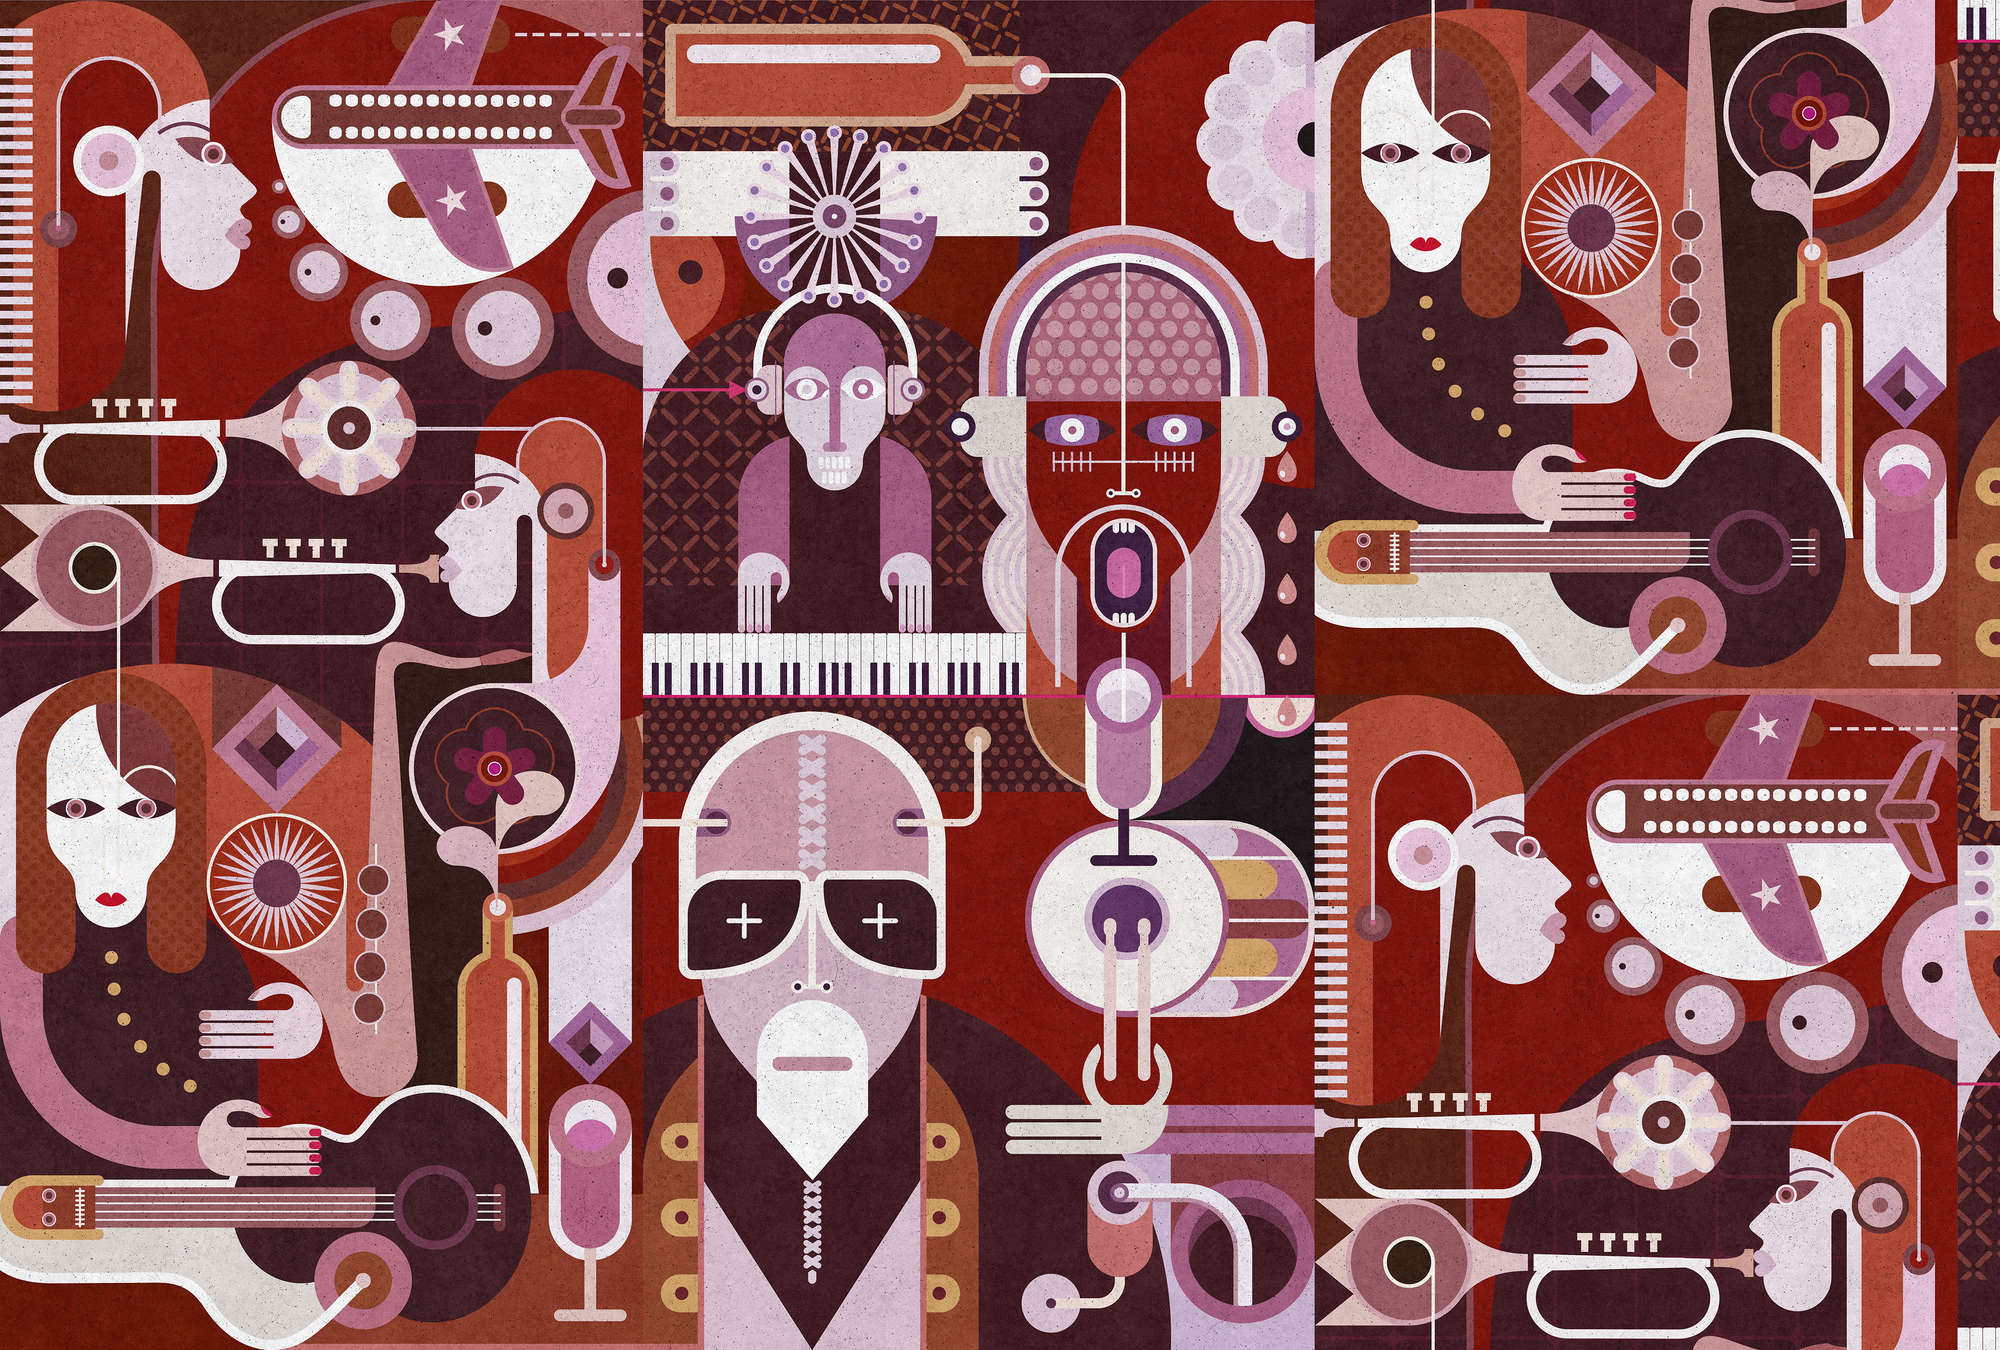             Wall of sound 2 - Papier peint abstrait avec des visages dans une texture de béton - gris, rose | Intissé lisse mat
        